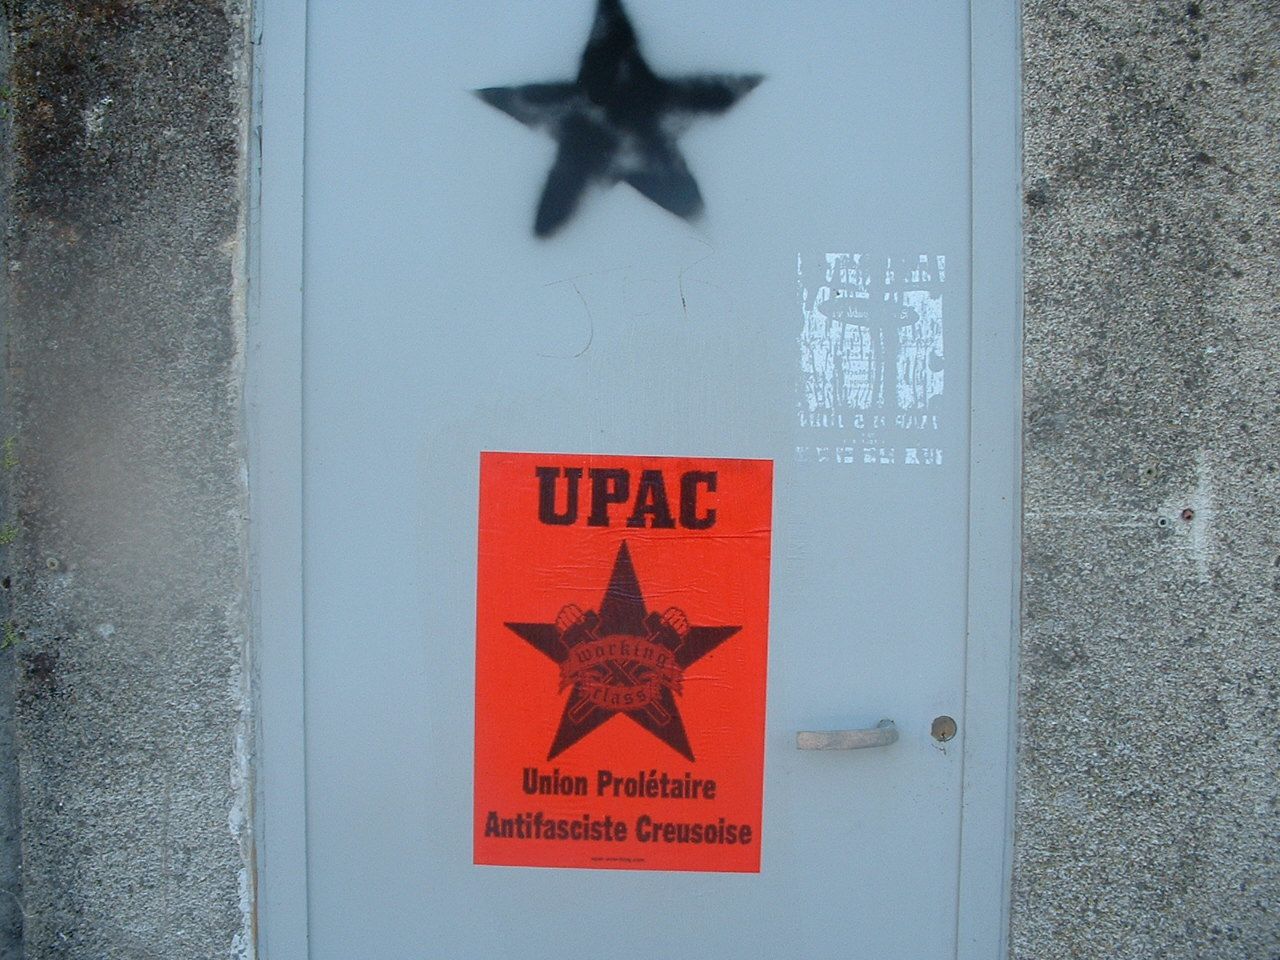 Campagne urbaine de l'UPAC à La Souterraine :